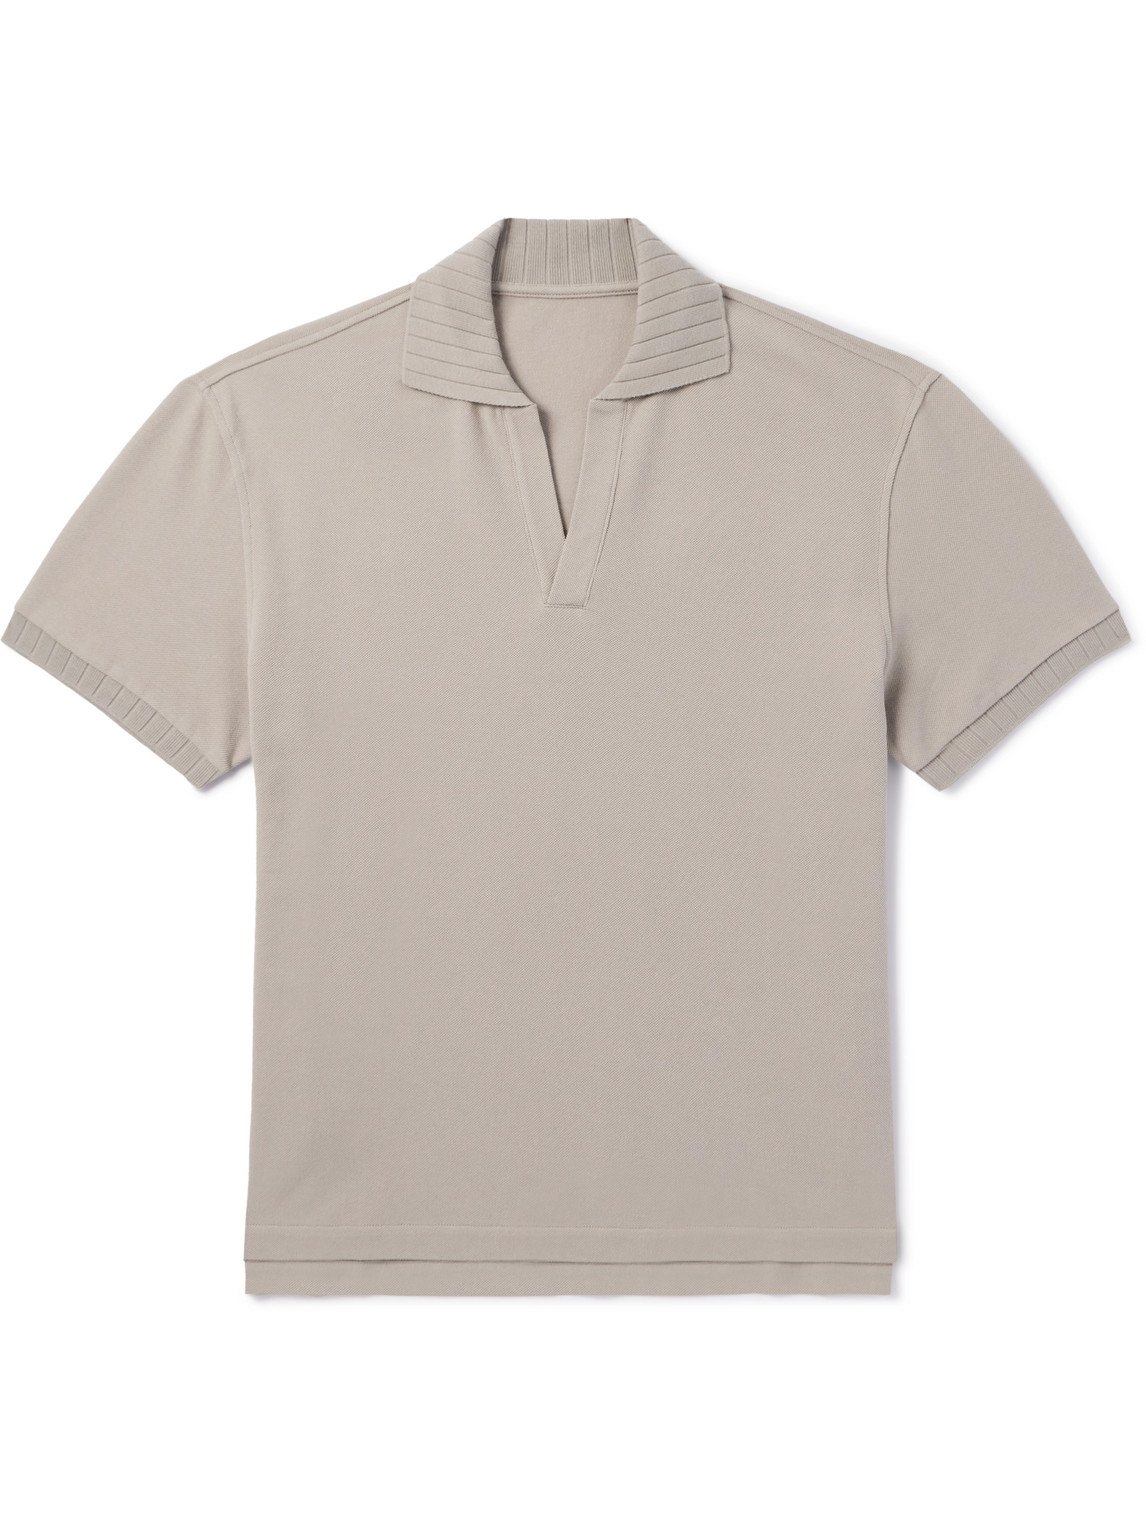 Stòffa Cotton-piqué Polo Shirt In Neutrals